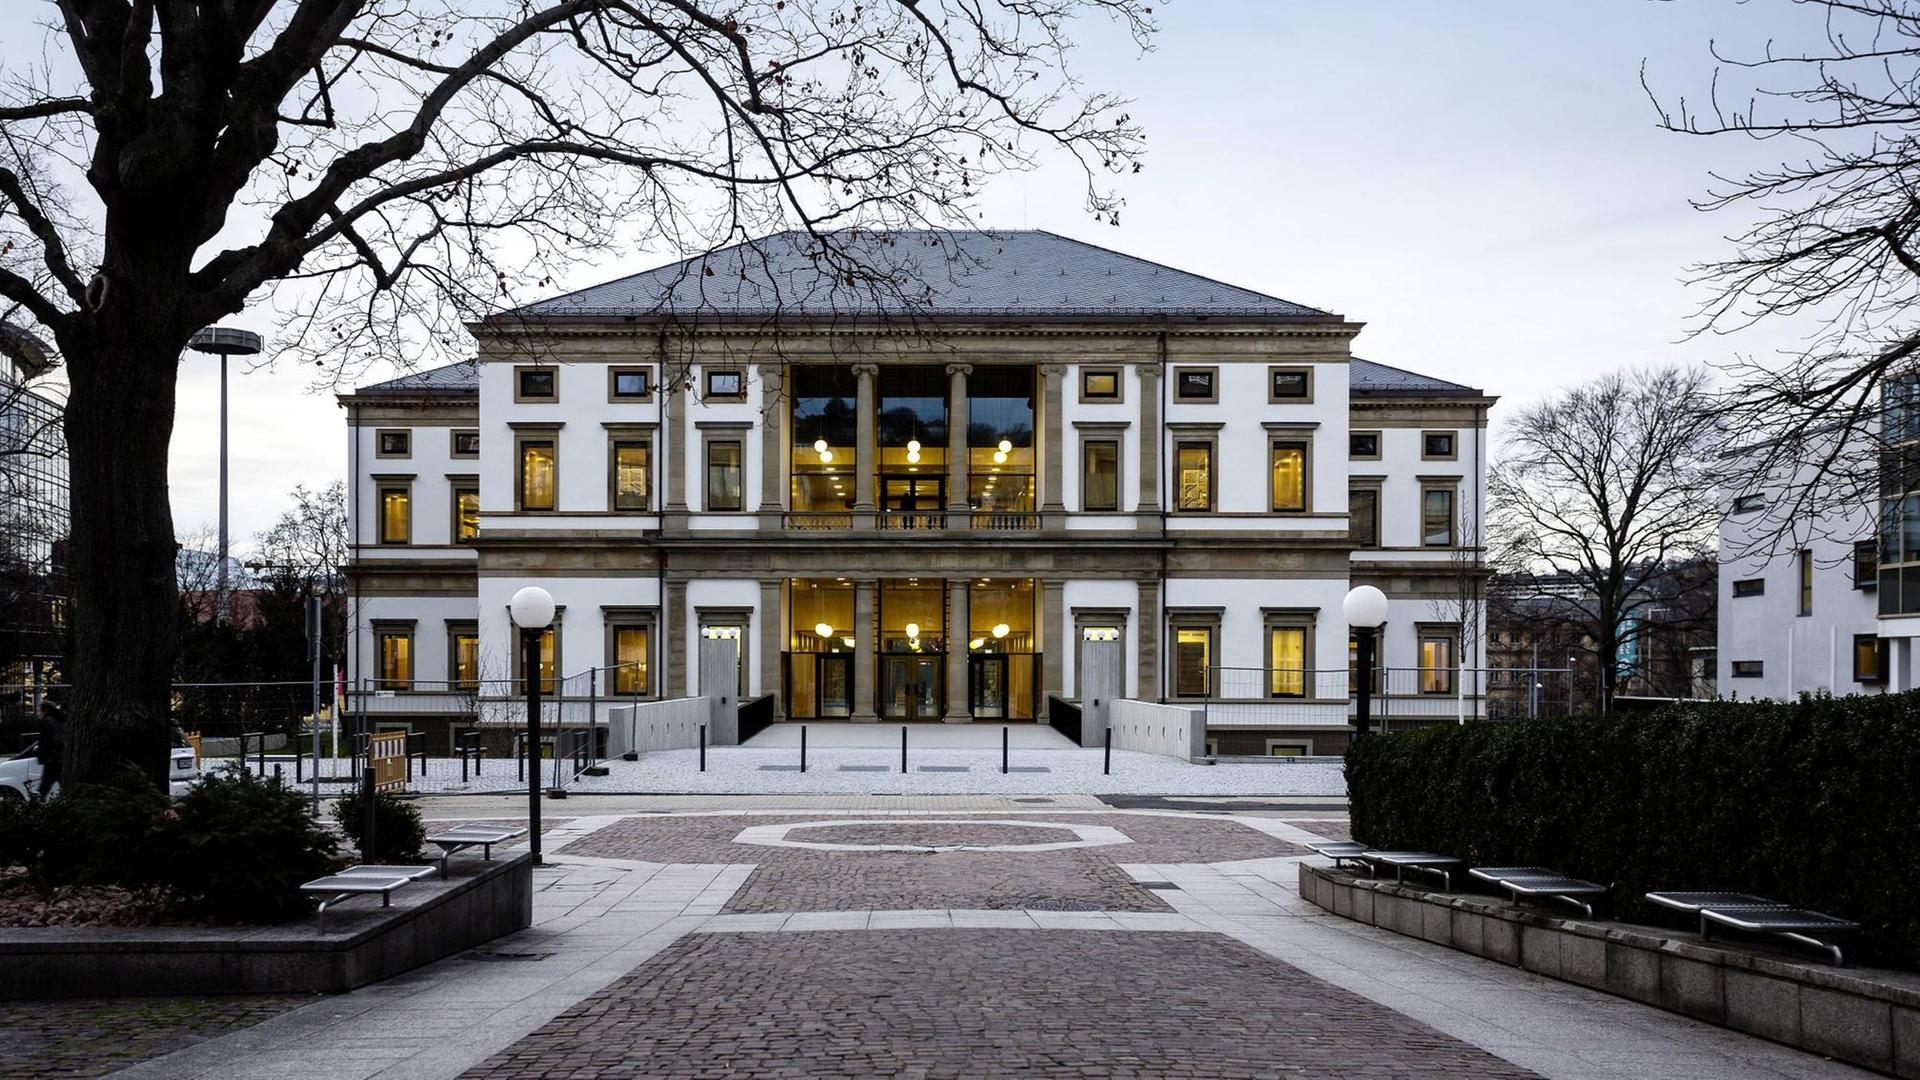 Das StadtPalais in Stuttgart, Wohnsitz des letzten württembergischen Königs Wilhelm II. Seit 2018 ist das klassizistische Gebäude Stadtmuseum.